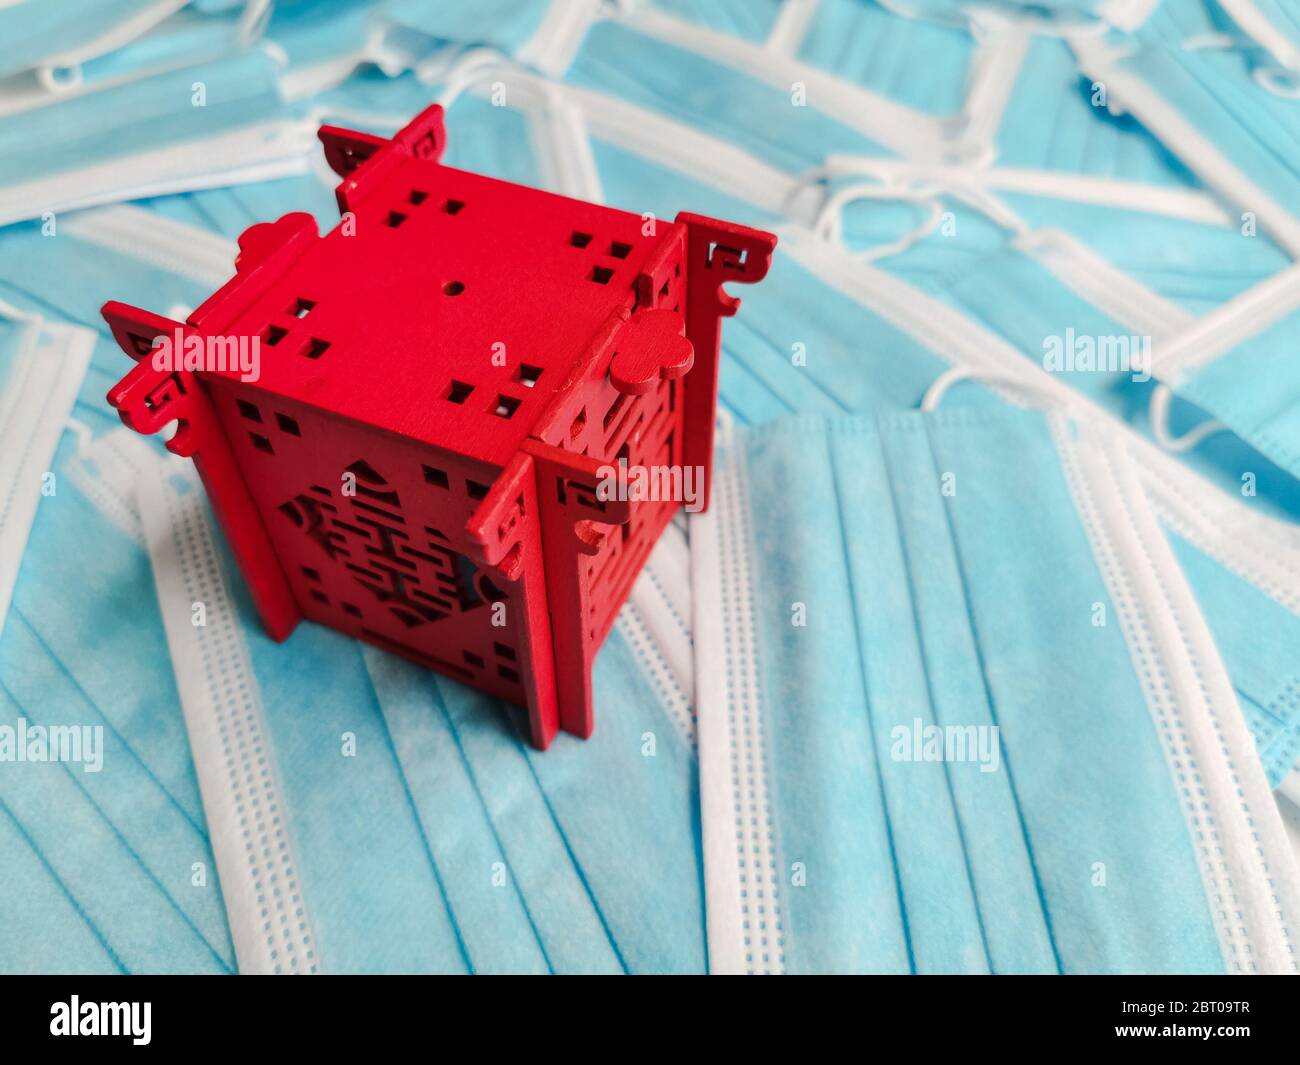 Padiglione in miniatura rosso che rappresenta la Cina su uno sfondo di maschere chirurgiche monouso blu Foto Stock